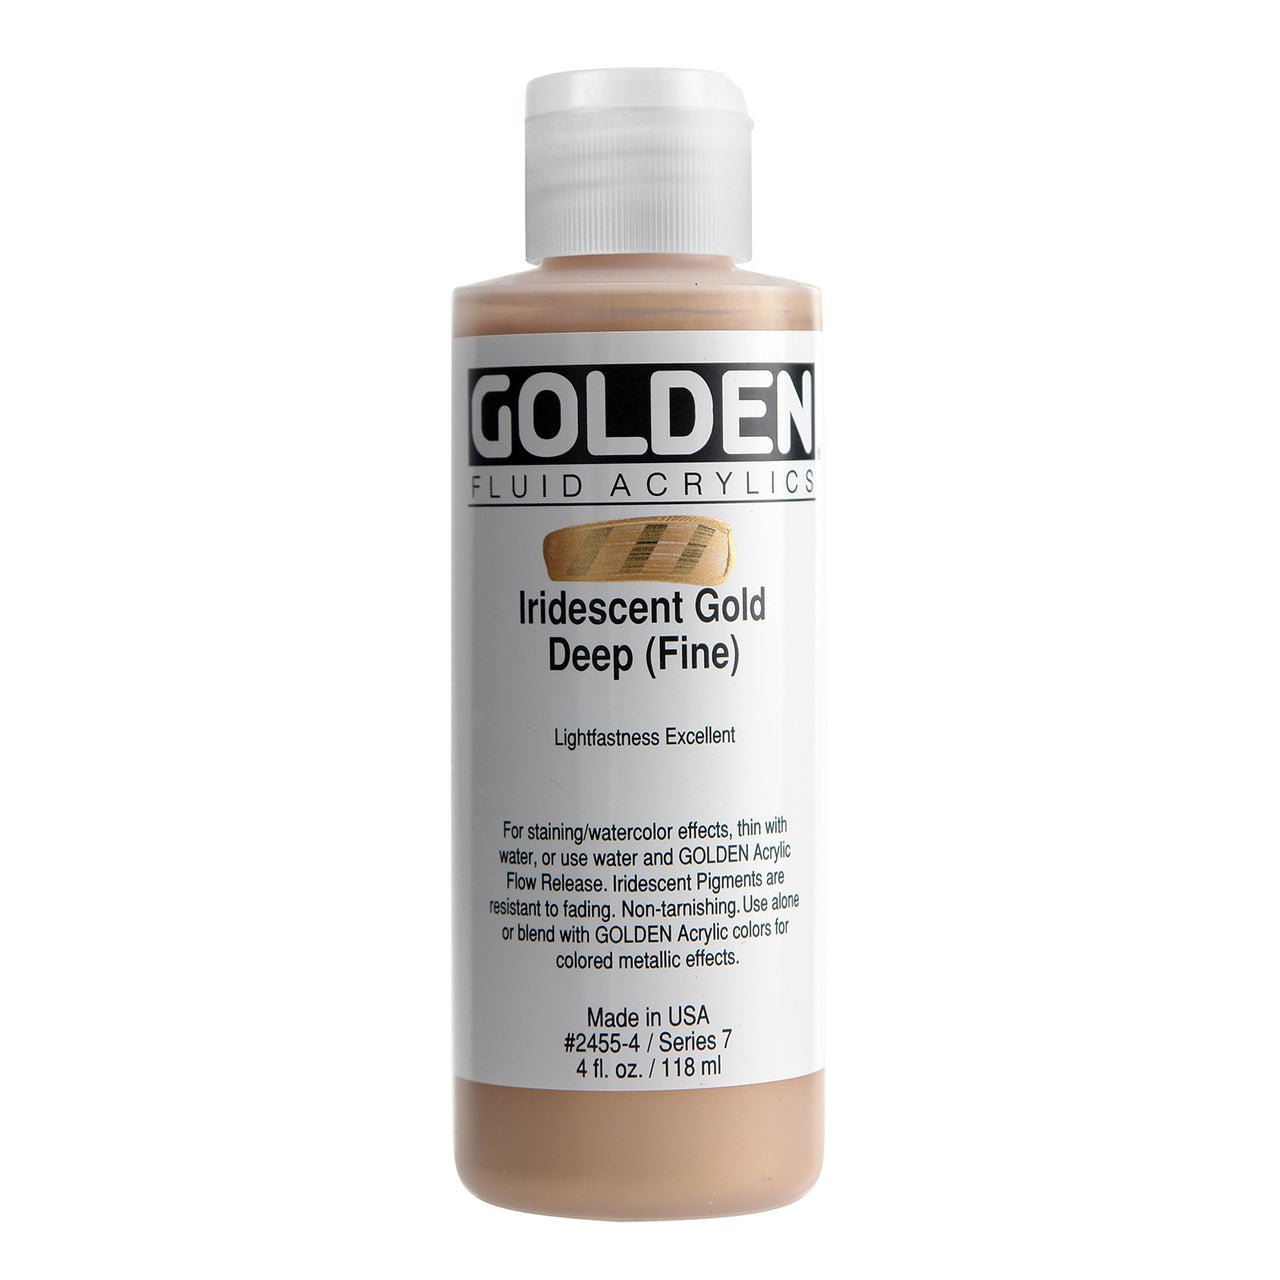 Golden Fluid Acrylic Iridescent Gold Deep (fine) 4 oz - merriartist.com